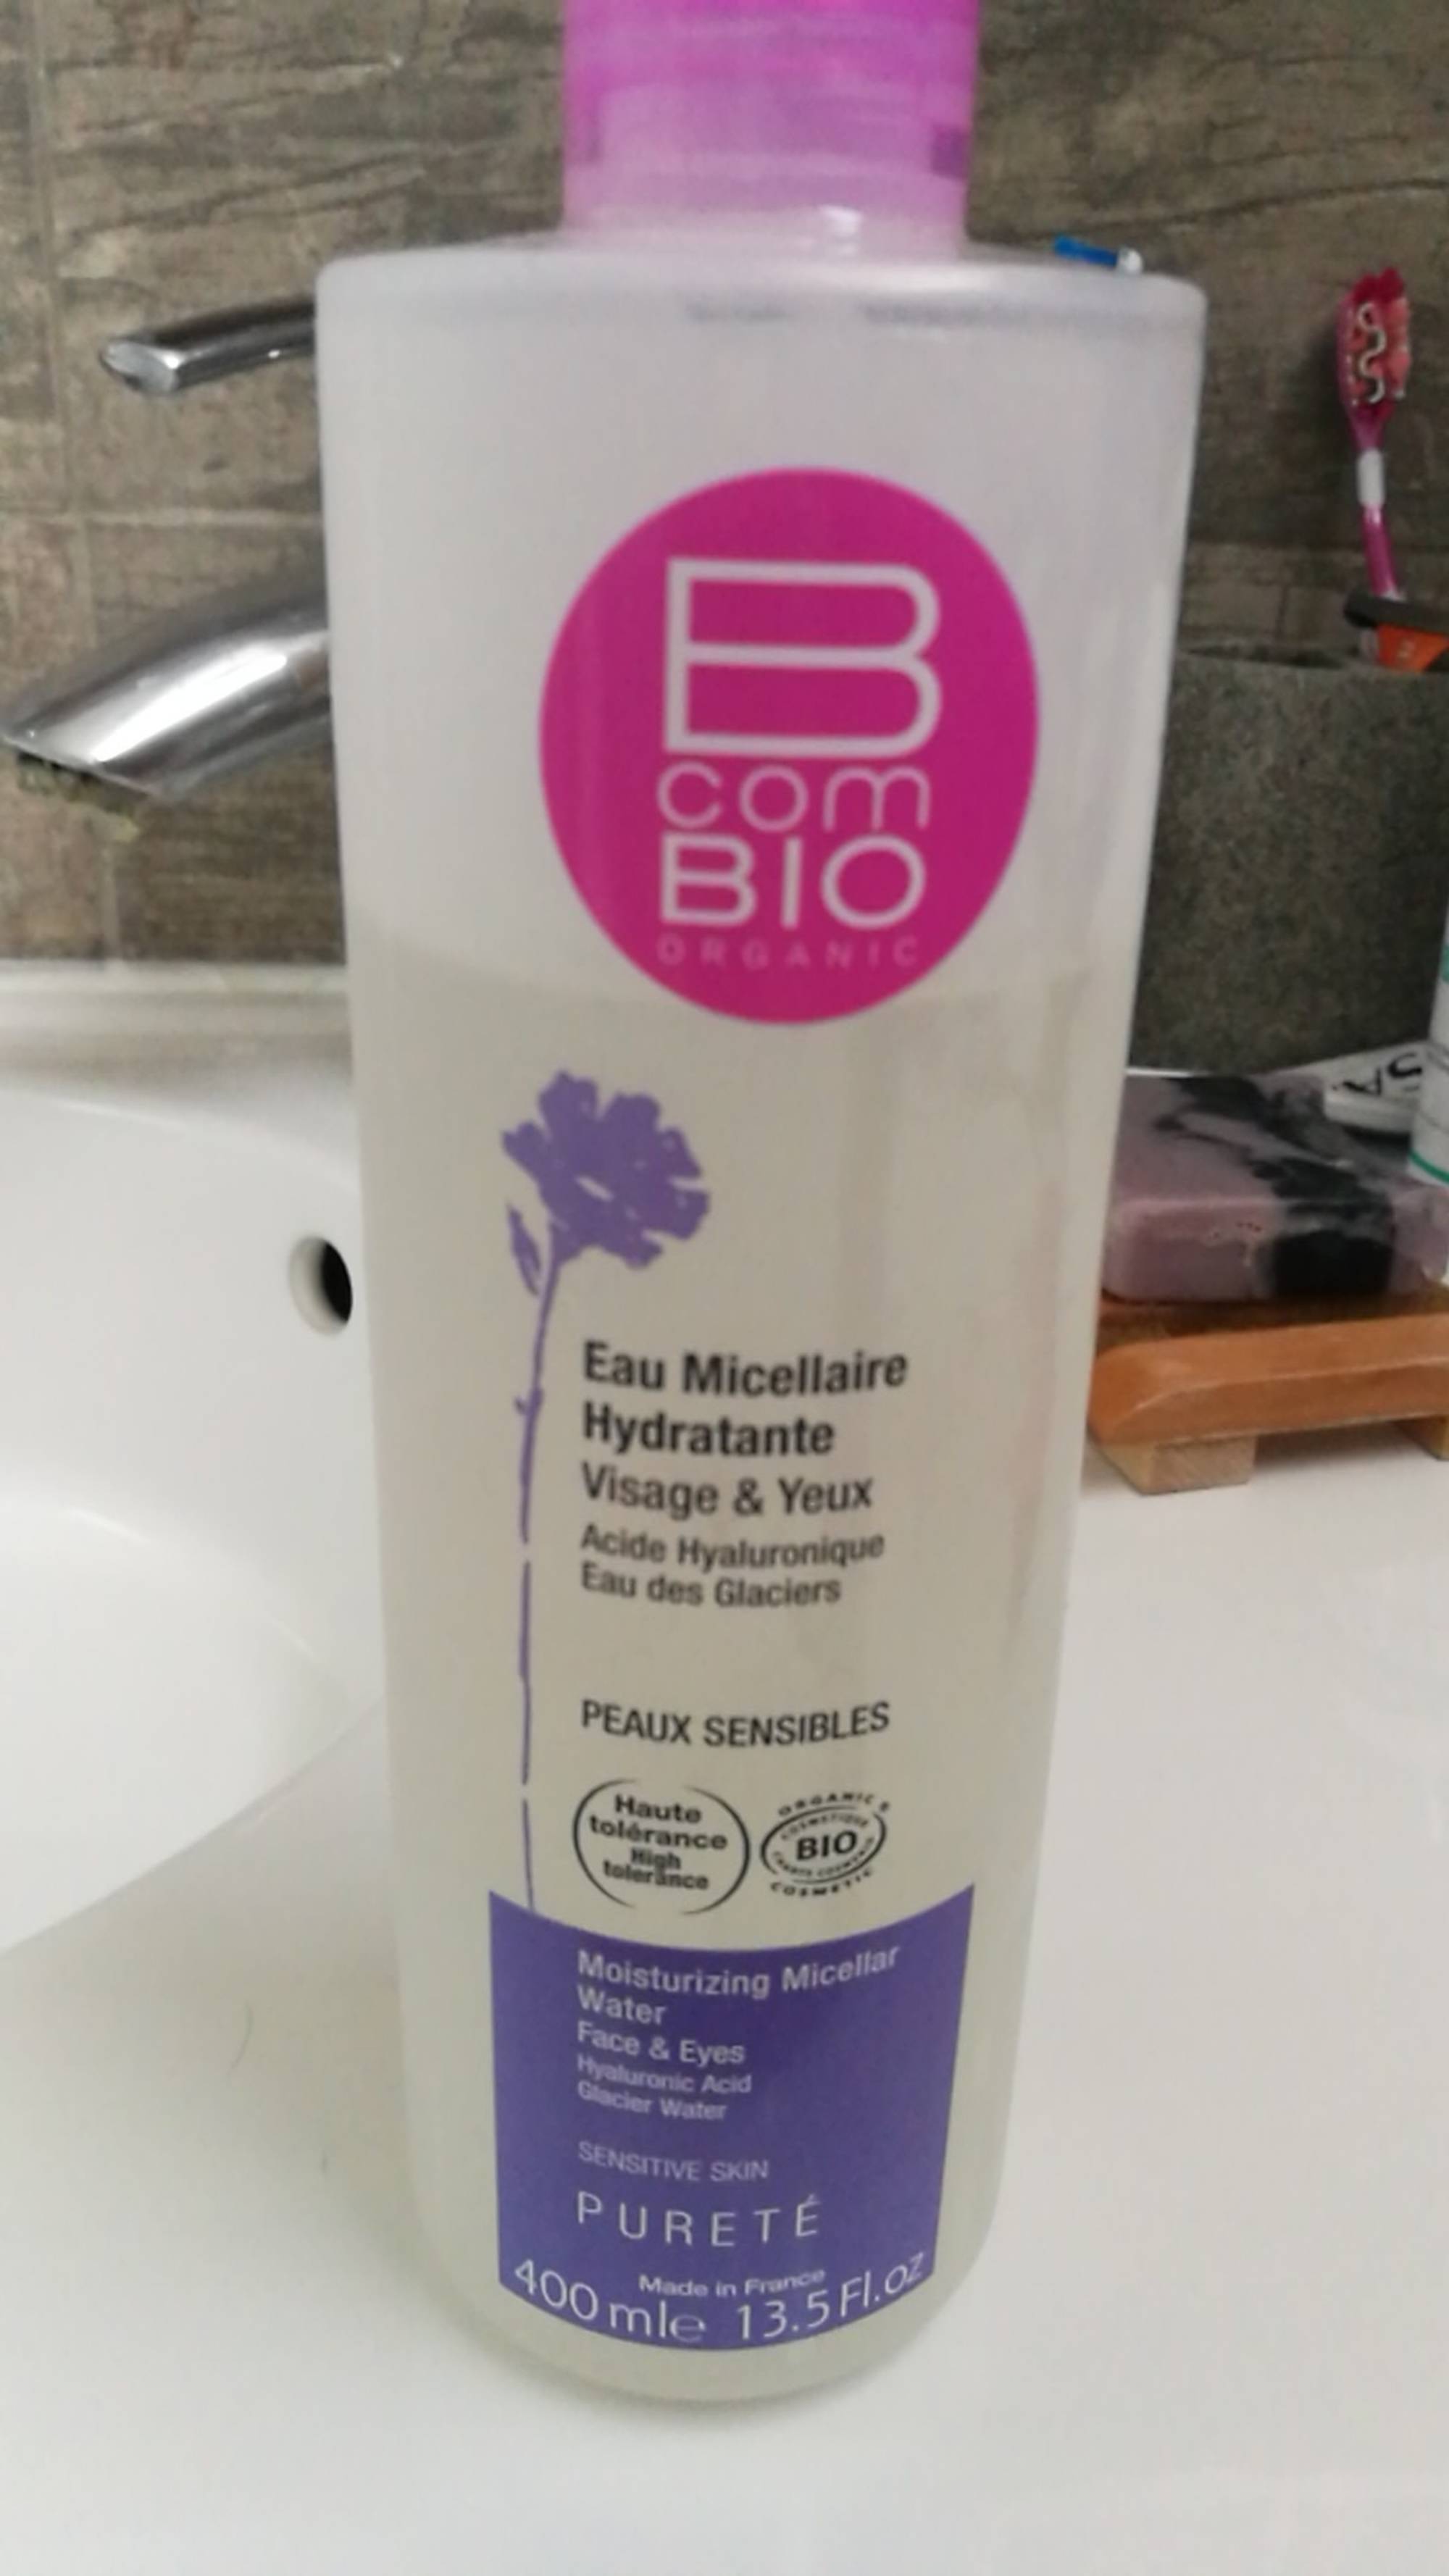 B COM BIO - Eau Micellaire Hydratante